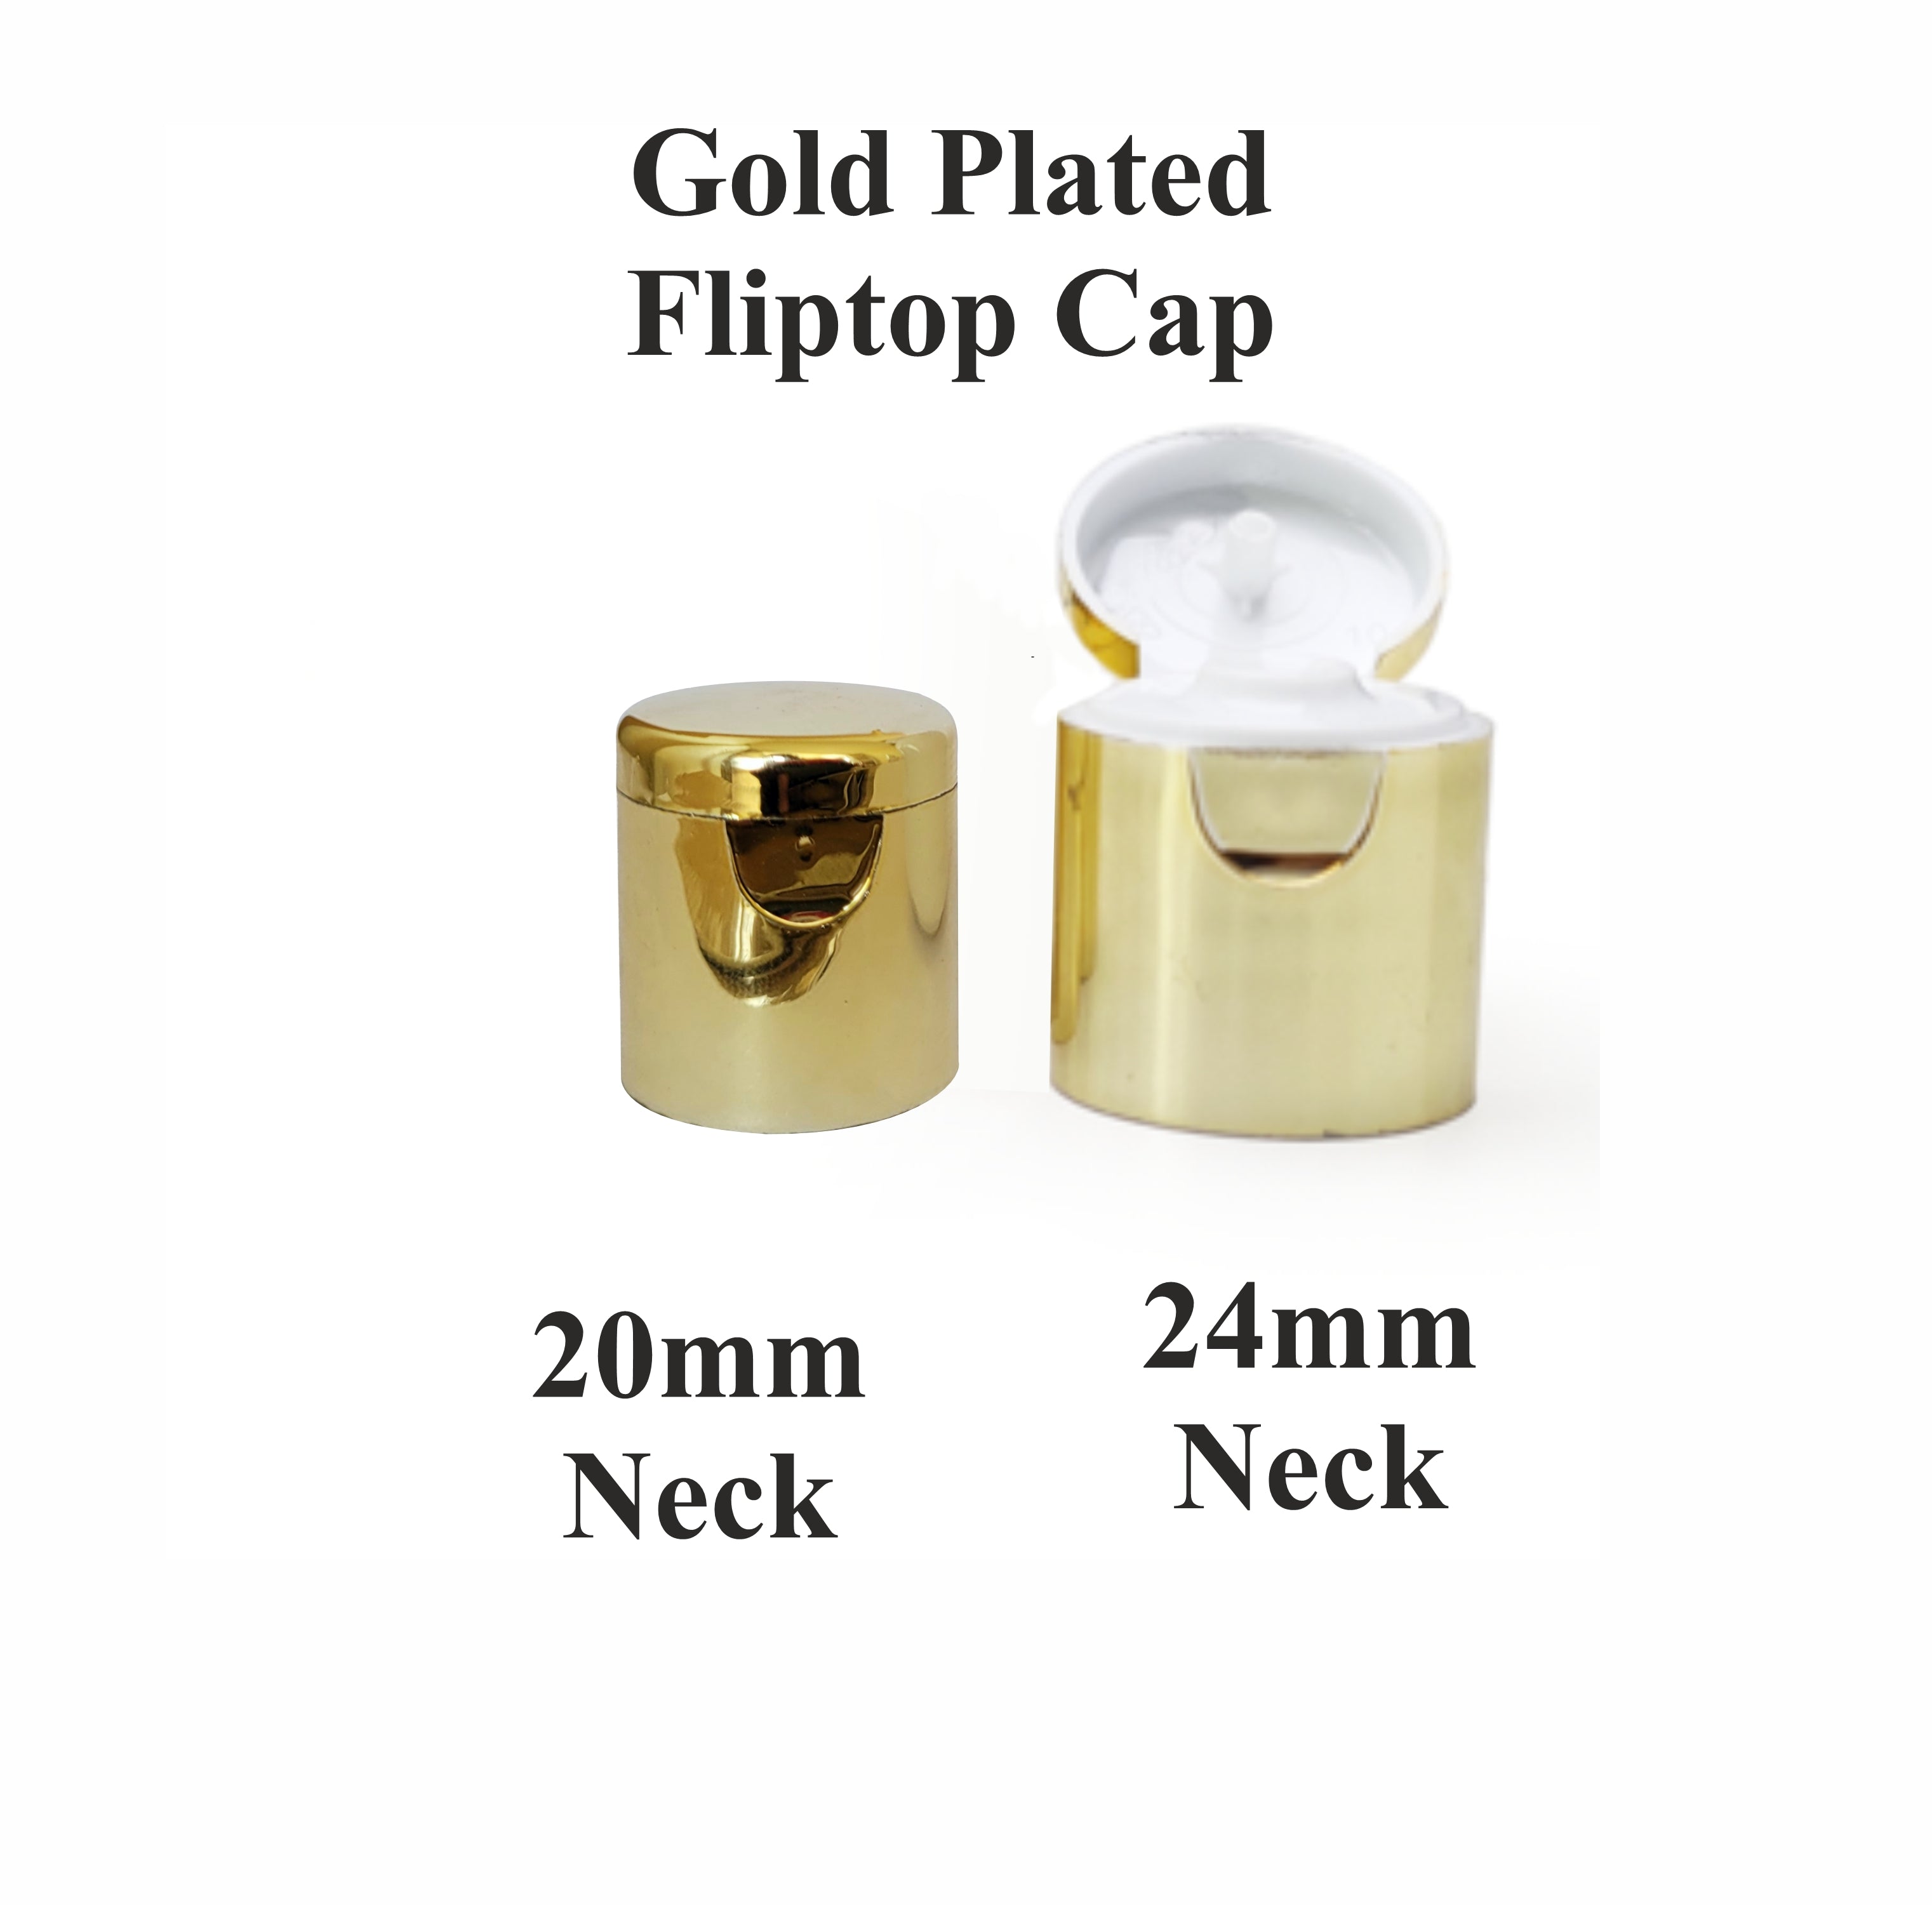 [ZMPC06] Gold Plated Flip top Cap _ 20mm & 24mm Neck